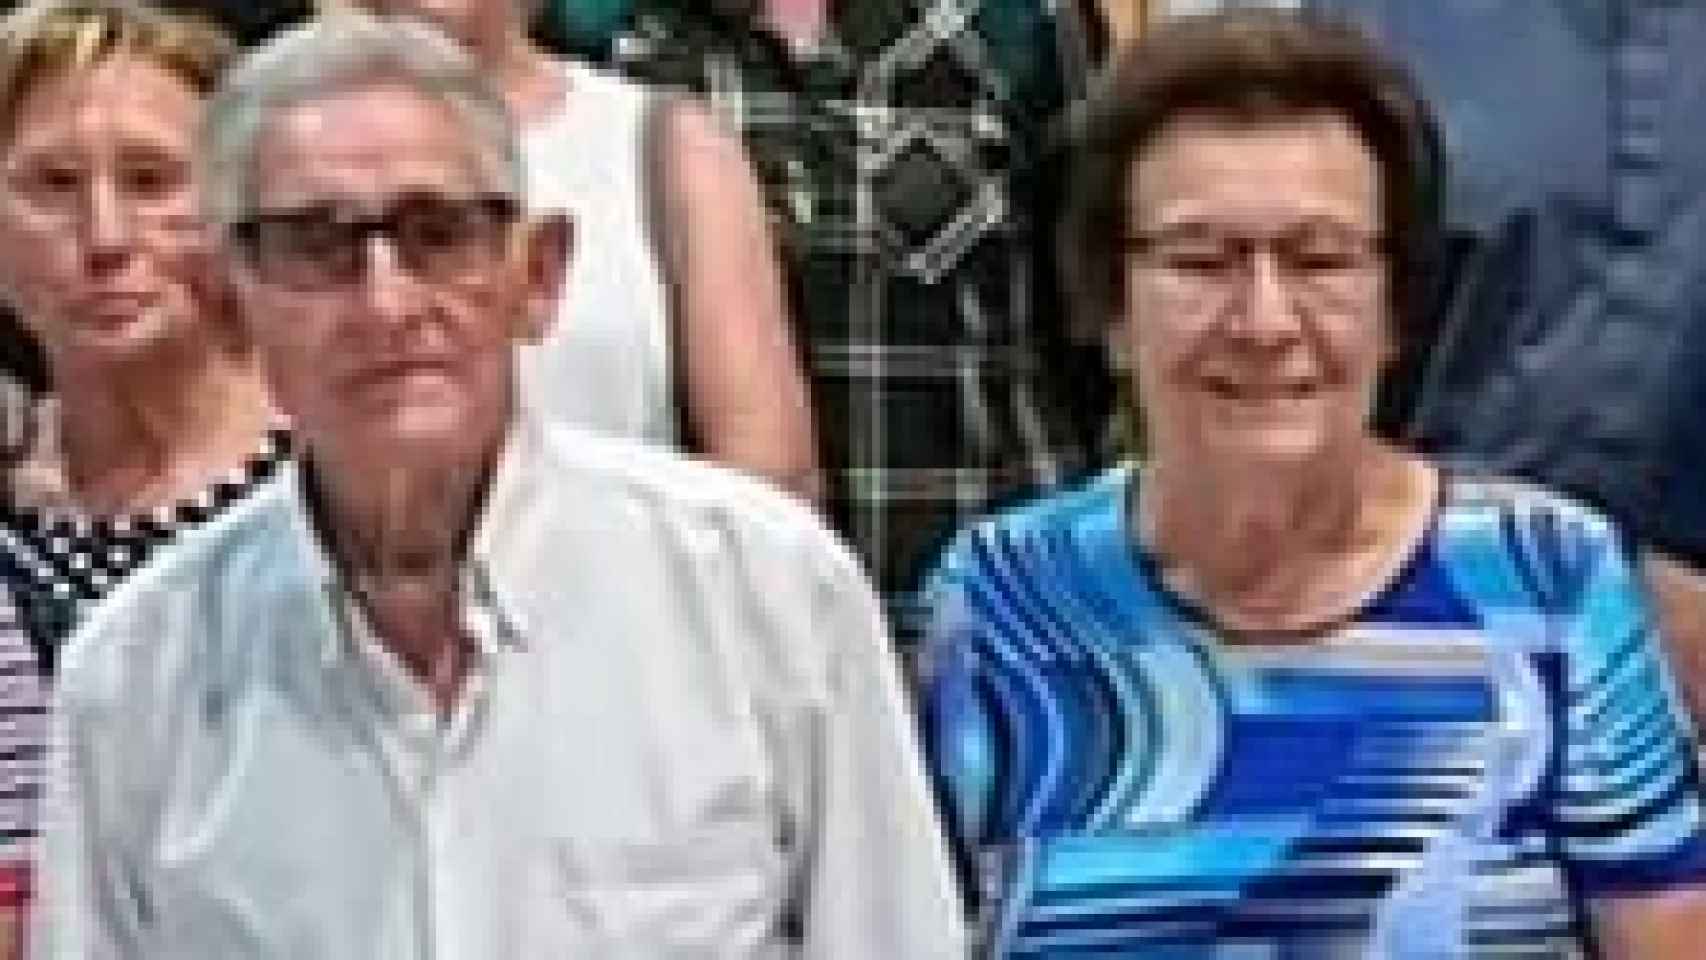 Pedro Pérez y Trinidad Coll, el matrimonio de octogenarios, al que arrebataron la vida a puñaladas en su casa de la pedanía murciana de Sangonera la Seca